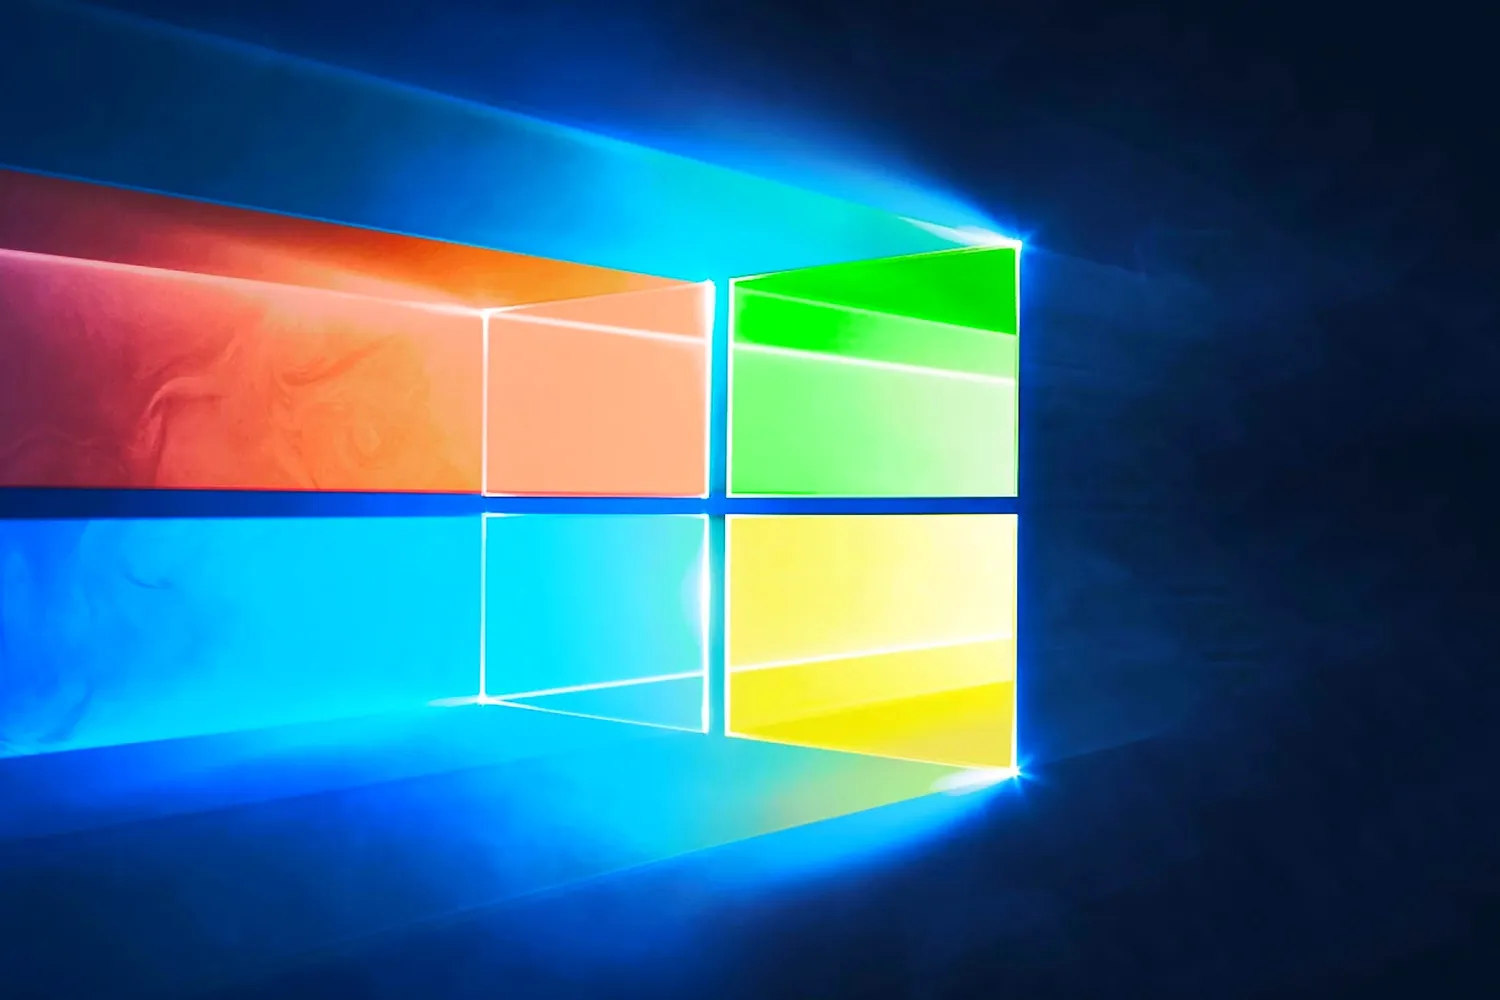 Ücretsiz Windows 10 Yükseltmesi Nasıl Yapılır?